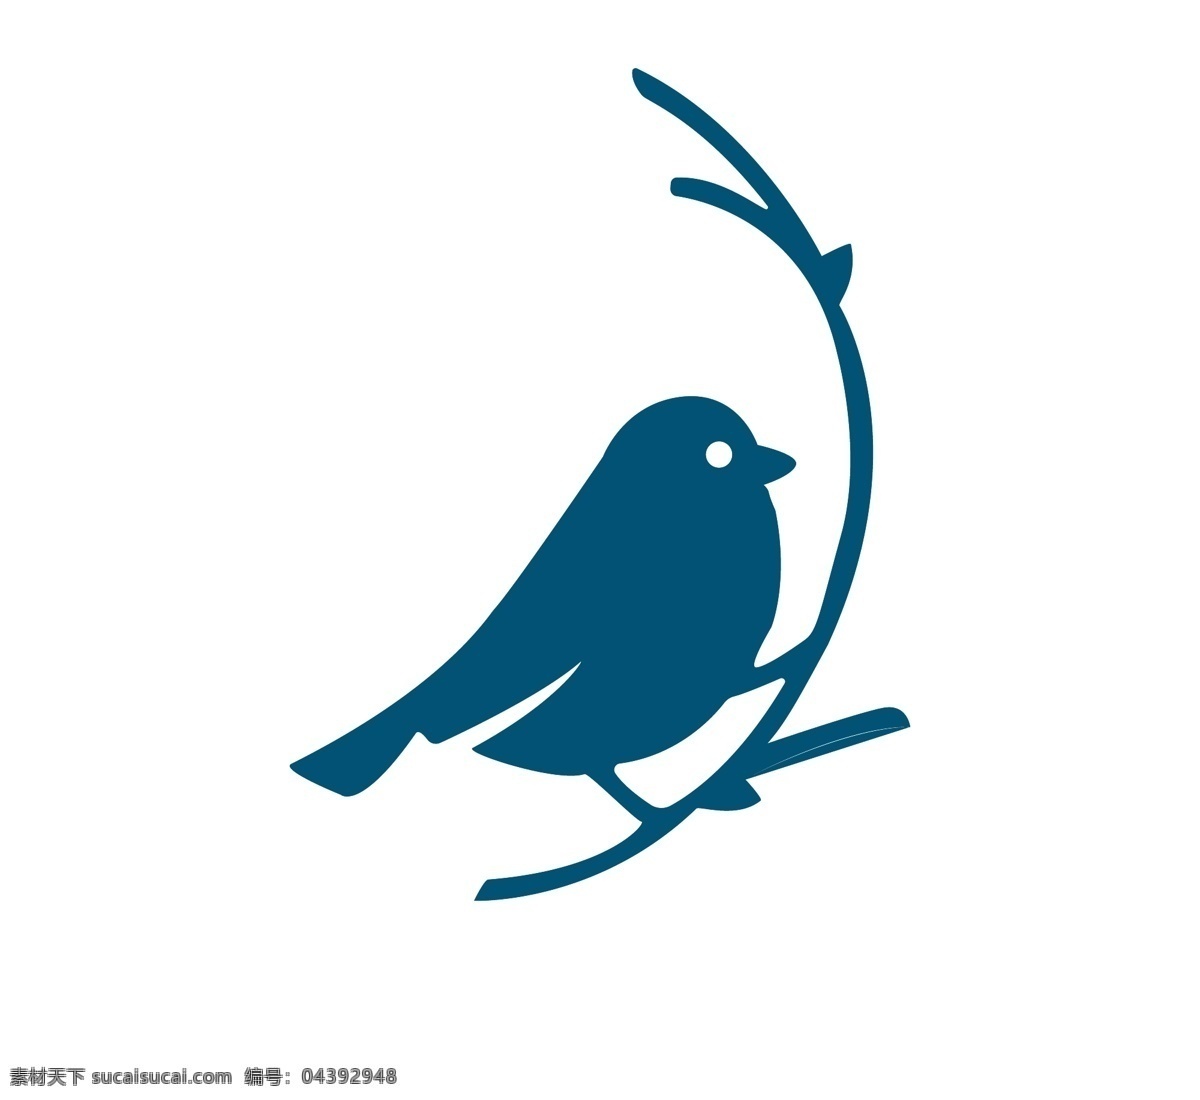 小鸟 树枝 图标 logo图片 logo 简笔画 动物 翅膀 飞行 标志图标 其他图标